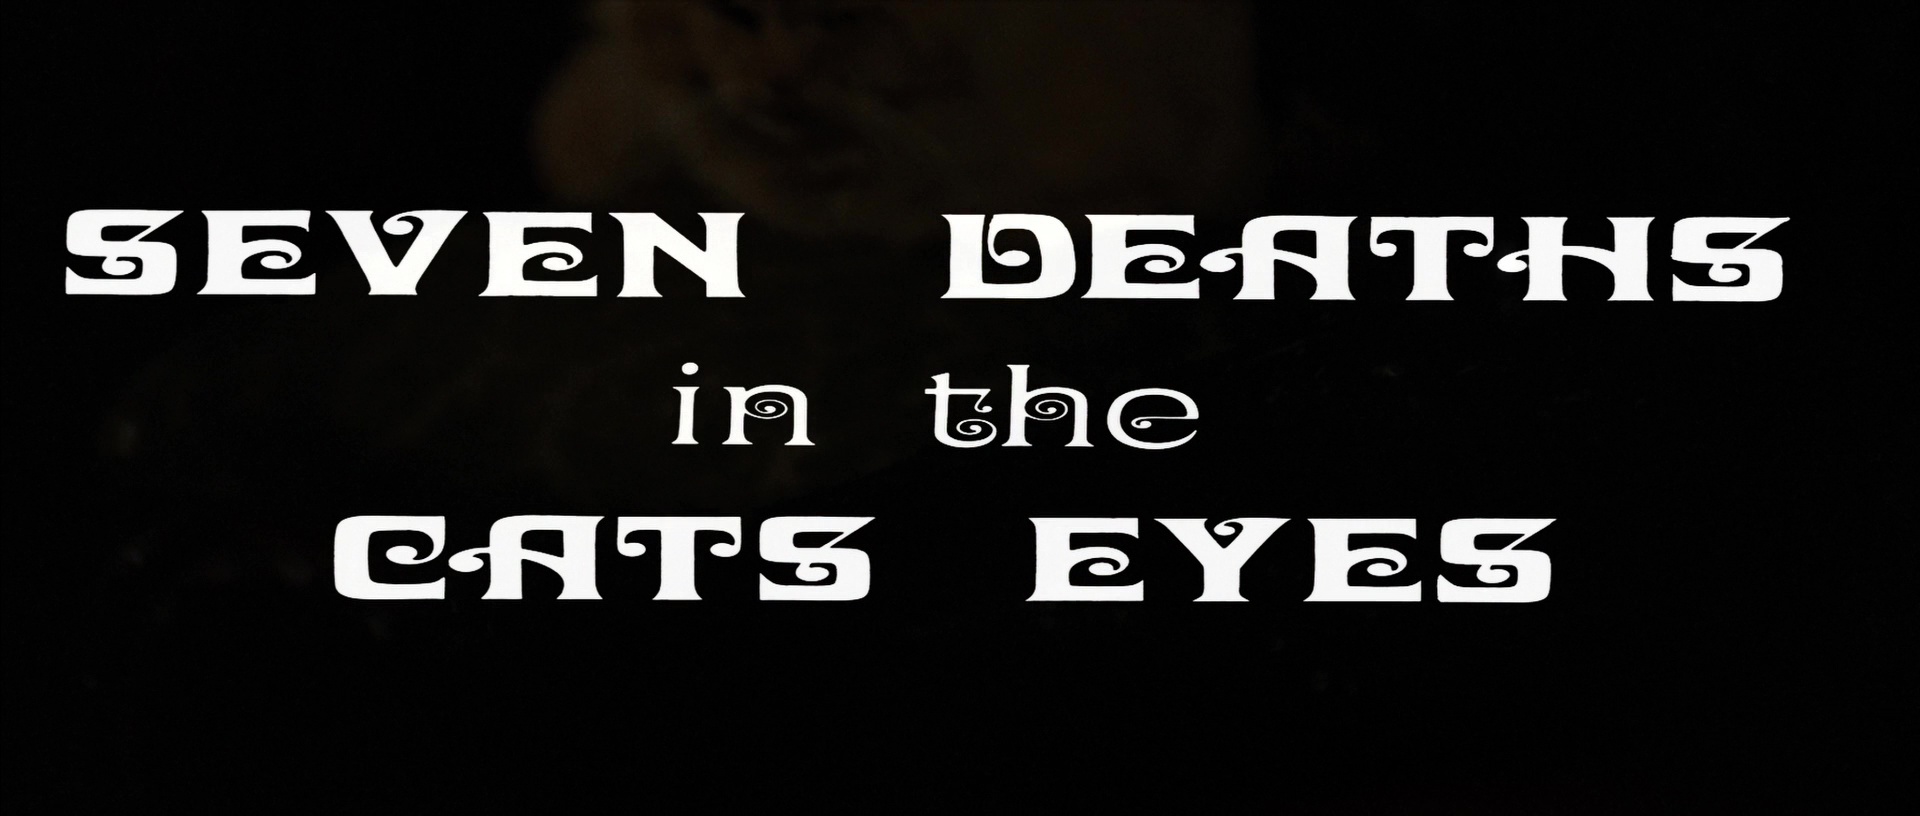 La morte negli occhi del gatto (1973) title.jpg